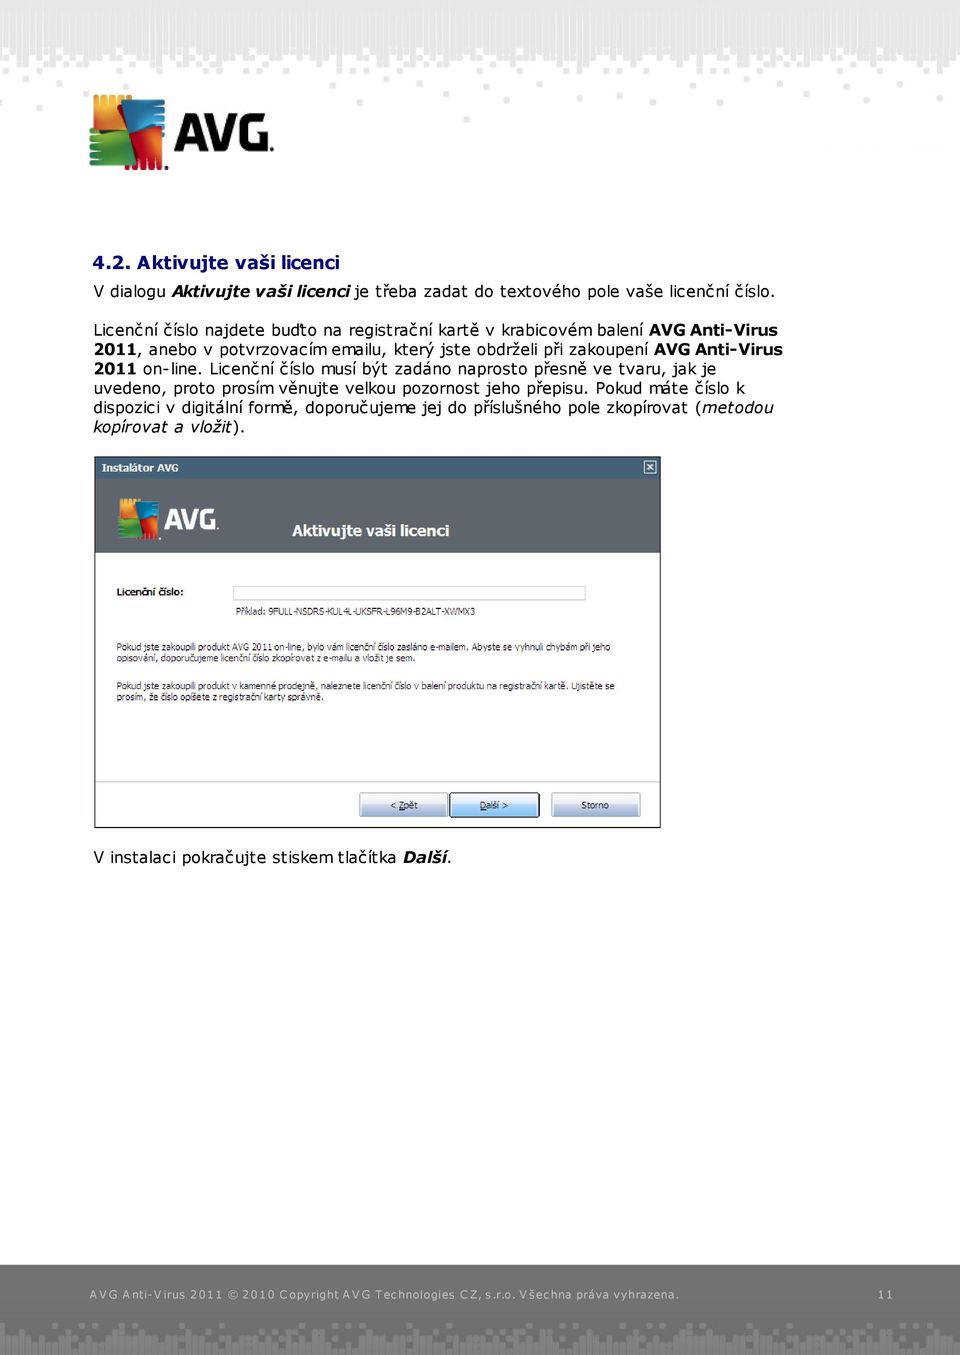 zakoupení AVG Anti-Virus 2011 on-line.